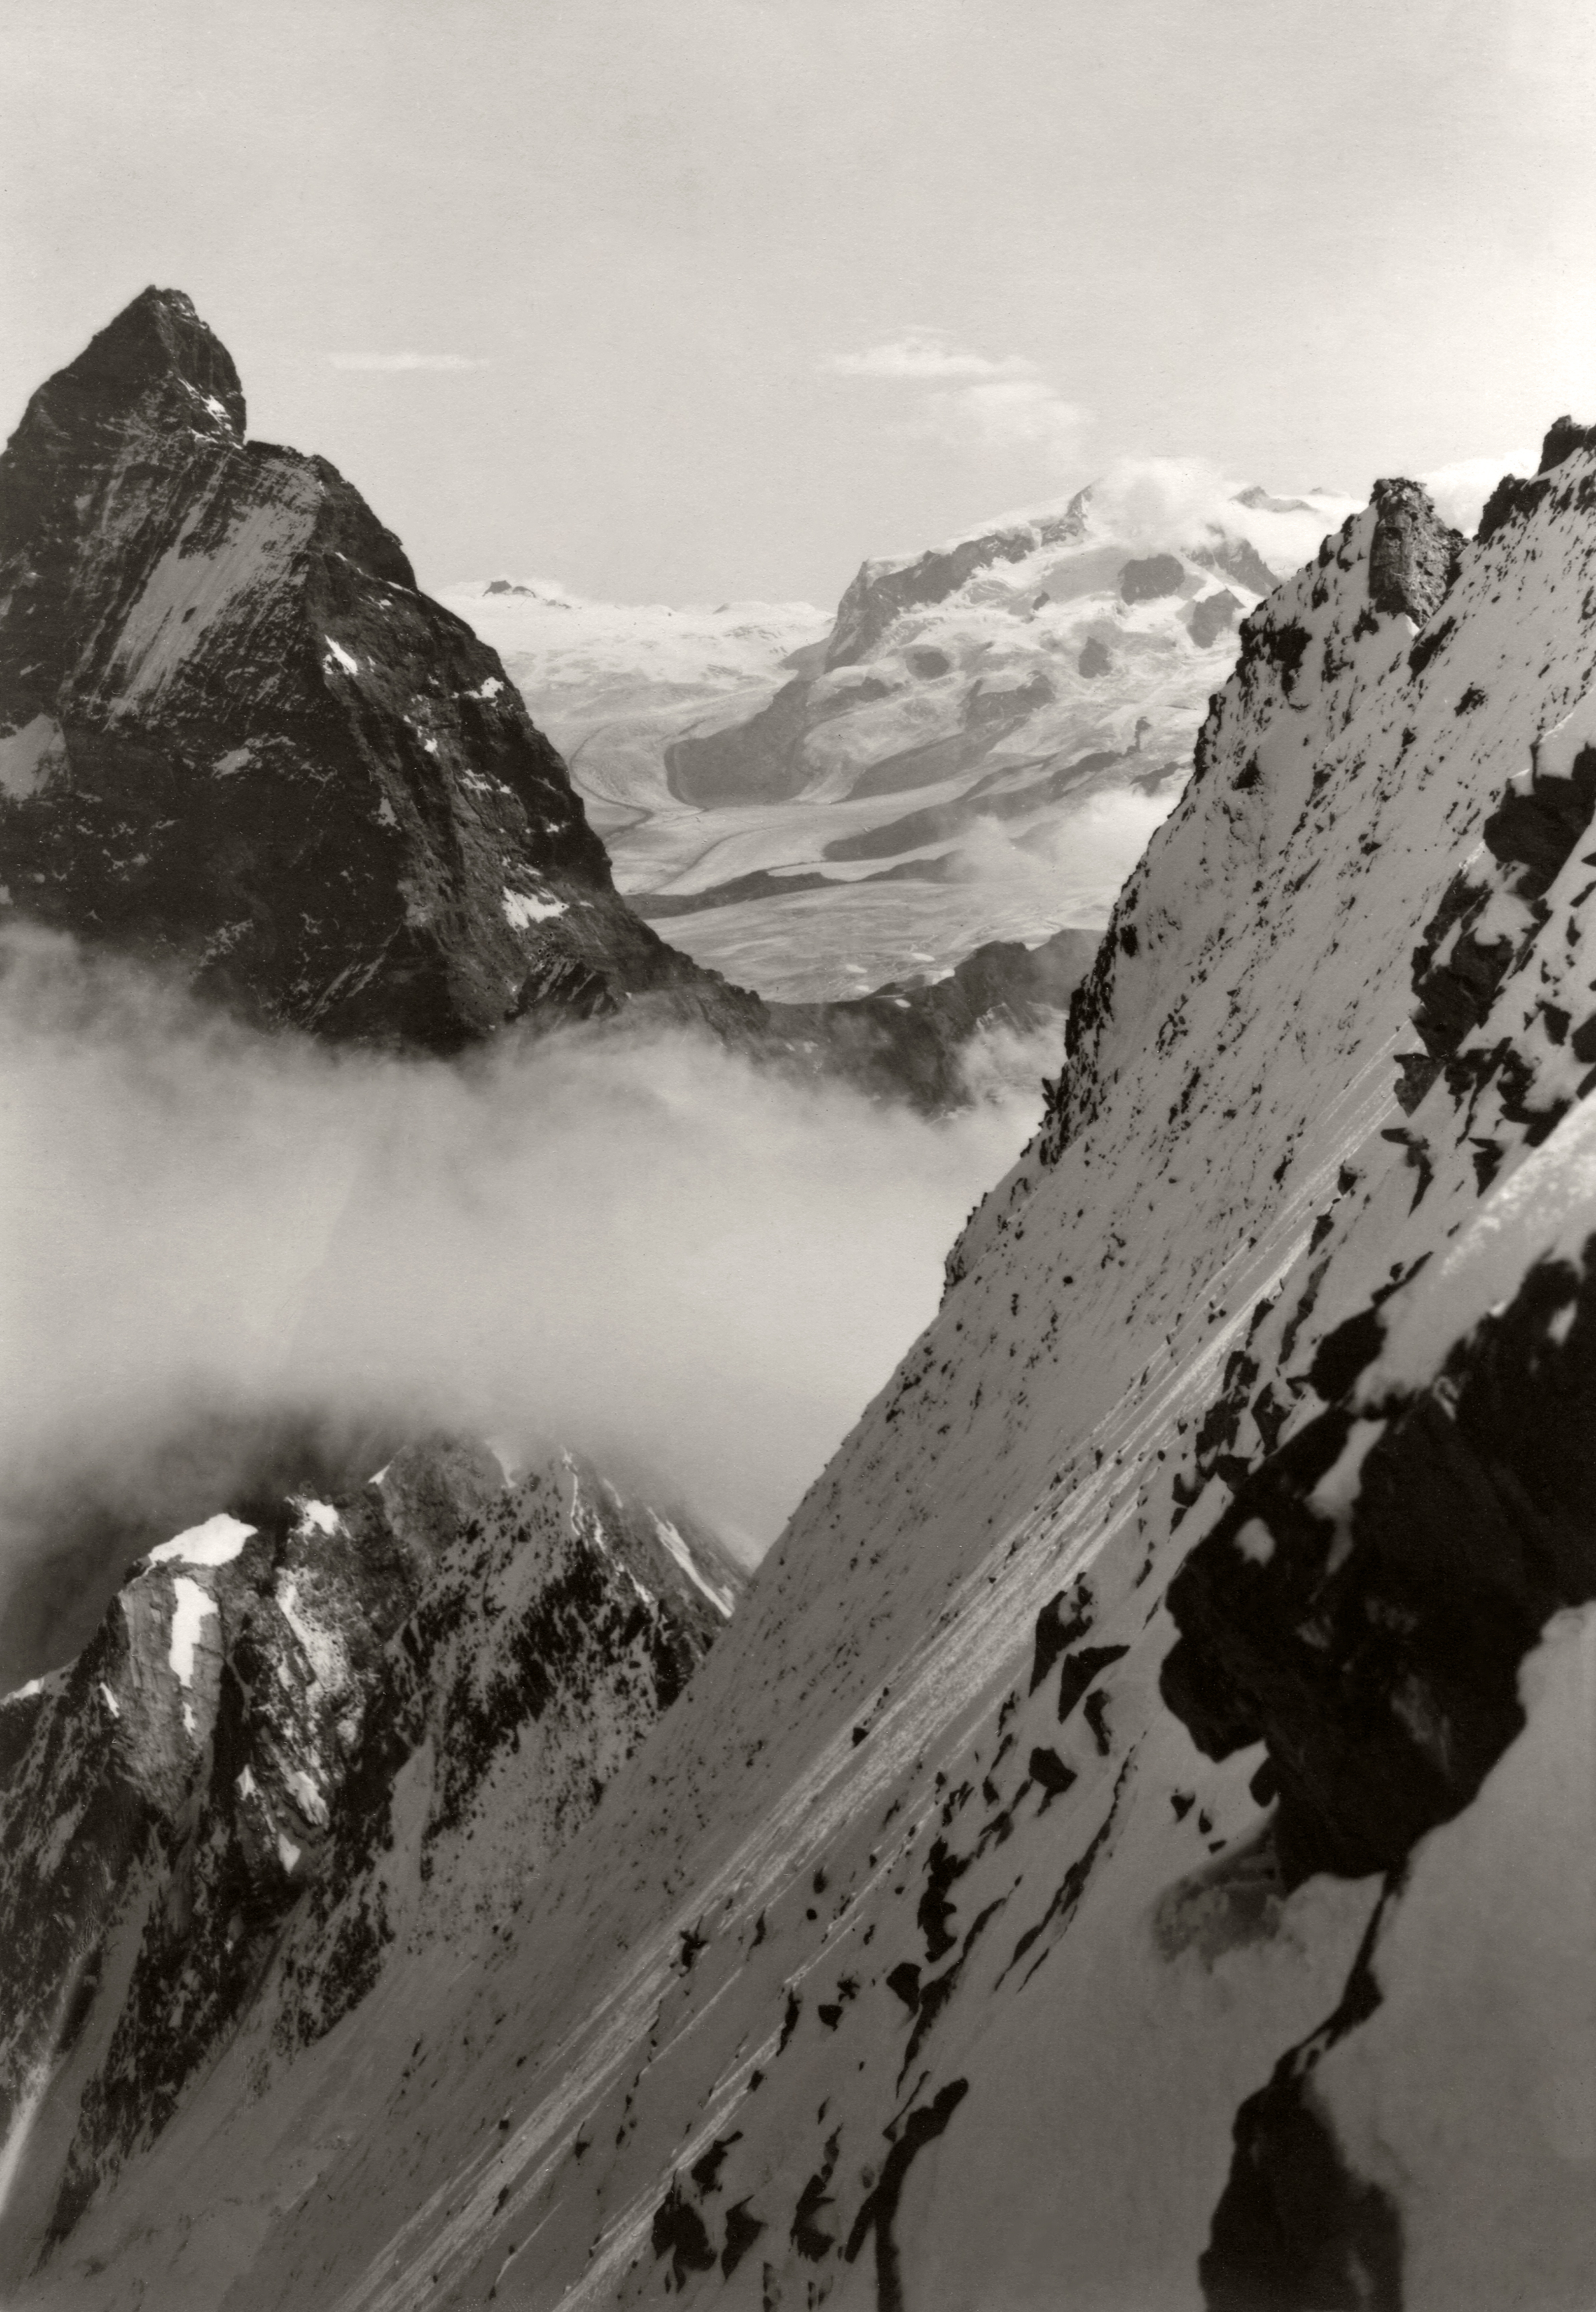 Matterhorn und Monte Rosa von der Nordwand des Dent d’Hérens. September 1929.